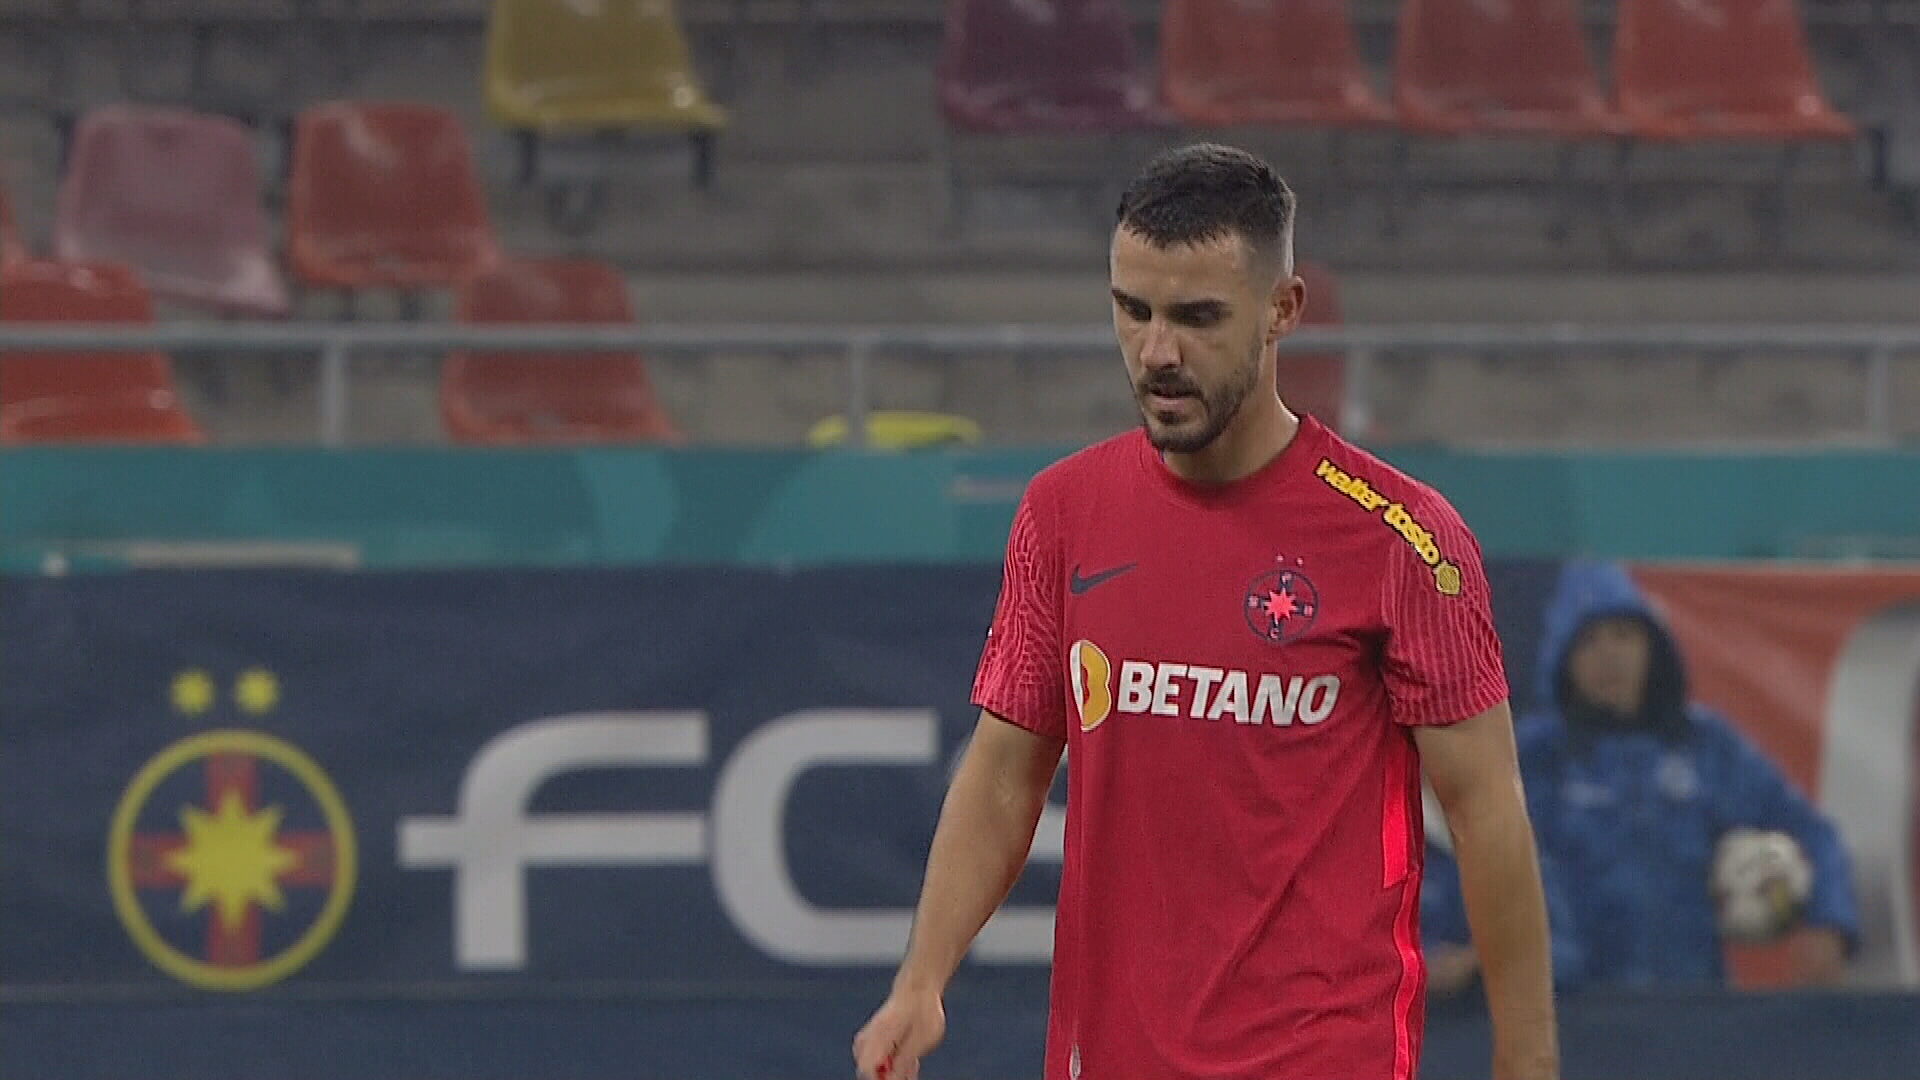 Răzvan Oaidă a jucat doar 25 de minute în FCSB – CS Mioveni! Cum a reacționat fotbalistul după schimbare